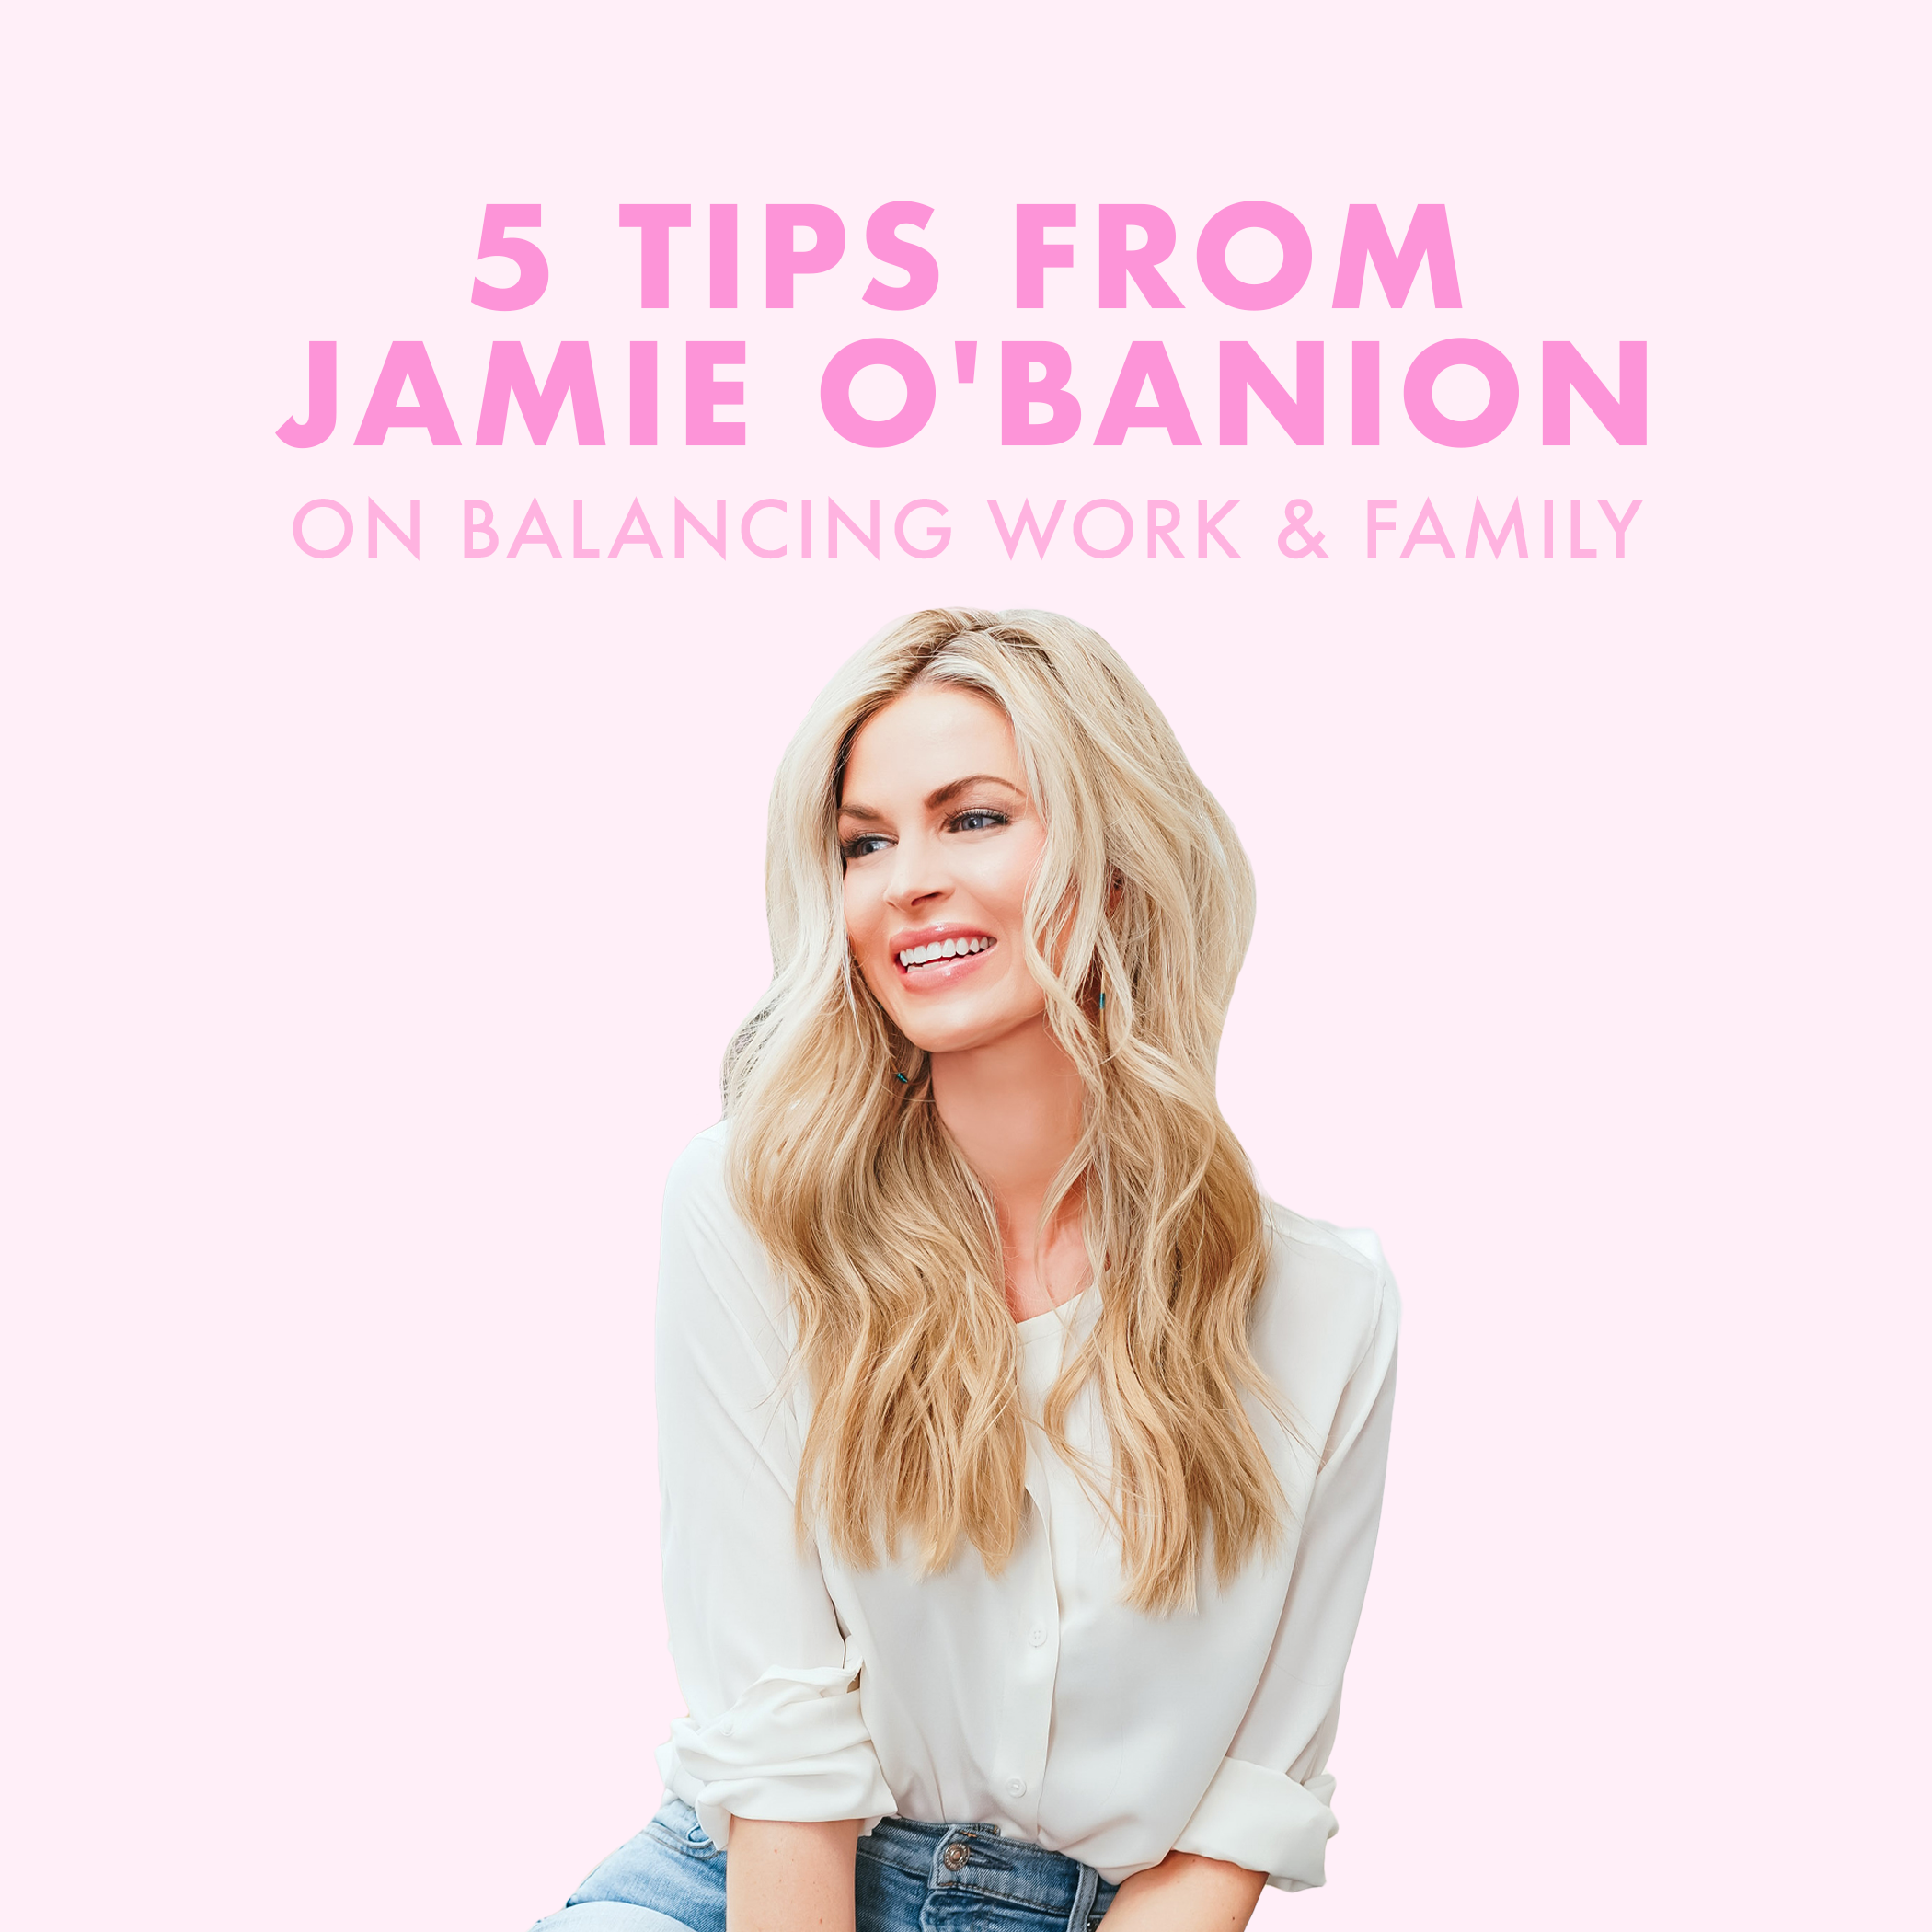 5 tips van Jamie O'Banion over de balans tussen werk en gezin  Schakel uw JavaScript in om inhoud te bekijken Hallo hallo. Onlangs hadden we Jamie O'Banion op de podcast en ik wilde enkele van haar tips op de blog met je delen. Omdat, zoals ik altijd zeg, ik wil dat deze blog een bron voor je is. Als je nog nooit van Jamie O'Banion hebt gehoord, zij is de oprichter en CEO van BeautyBio , een schoon huidverzorgingsbedrijf wiens missie het is om "de krachtigste ingrediënten te vinden en te combineren met effectieve natuurlijke extracten om je de meest klinisch geformuleerde collectie huidverzorging te bieden .” Het draait allemaal om "de kracht van resultaten op kantoor in de palm van je handen leggen." Jamie is niet alleen een totale BOSS, ze is ook een vrouw en moeder, dus wie kan ons beter tips geven over levenslessen, balans tussen werk en privé en schoonheid?! Bovendien is ze doodsbenauwd. Jamie deelt zoveel goede tips op de podcast, maar hier is een klein voorproefje van enkele van haar beste tips die je moet weten.  5 tips van Jamie O'Banion: ♡ over prioriteiten & risico Er is geen scenario waarin je een bepaald niveau van grootsheid kunt bereiken in wat je nastreeft als je niet bereid bent enig risico te tolereren. Als het allemaal gezegd en gedaan is, nemen we onze herinneringen en ervaringen met ons mee. Het is heerlijk als er een resultaat is dat monetair is, en dat is geweldig. Maar er zijn overwinningen. Er zijn verliezen. Als je niet, althans voor mij, gegrondvest bent op de dingen die echt belangrijk zijn, waai je als een blad in de wind. Omdat ik die prioriteiten heb in die volgorde van geloof, en gezin, en dan werken, als dat goed is, en dat is solide, en dat is dat al het andere stapsgewijs kan zijn. ♡ over geluk in je bedrijf Als u bijvoorbeeld een kookbedrijf begint en in gedachten dacht dat het de hele dag alleen maar koekjes zou versieren, dan realiseert u zich dat het eigenlijk mensen beheren, plannen, salarisadministratie, enz. is, dat u misschien niet het geluk hebt je dacht dat je eruit zou komen. Wat is je doel ermee? Is uw doel om het uit te besteden? Is je doel dat je gewoon graag in de keuken staat? Ik heb veel ondernemers hun passie zien volgen, maar dan opgebrand raken omdat ze beginnen te zeggen: “Wacht even. Ik geniet eigenlijk van het bakgedeelte, maar niet per se het runnen van het zakelijke gedeelte.” Als je geen interne passie en gedrevenheid hebt voor wat je doet, is er geen resultaat dat je de benzine geeft om door te gaan. ♡ tijd plannen met uw gezin Als je naar mijn agenda zou kijken, programmeer ik op tijd met mijn kinderen en man alsof het een bestuursvergadering is, want als je niet opzettelijk met je tijd omgaat, neem je altijd nog een vergadering, rek dan nog 15 minuten. Dan beginnen dingen kapot te gaan die je prioriteiten zijn, en ik heb ontdekt dat ik me daar vanbinnen niet zo goed voel. Je moet heel bewust omgaan met een-op-een tijd met de mensen van wie je houdt. op moeder schuld Het laat zien dat je je hart & prioriteiten op de juiste plaats hebt. Ik geloof dat iedereen een andere bandbreedte heeft. Als je iemand bent die die passie in je heeft, en je voelt dat je een betere moeder bent, een betere echtgenote als je die uitlaatklep kunt hebben, hoe dat er ook uitziet, dan is dat geweldig. Balans is geheel persoonlijk. Je moet dat definiëren, maar het is oké als je op sommige dagen het gevoel hebt dat je het verplettert op het werk, en soms verpletter je het thuis. Ik denk zolang als je in die zone bent. Als ik in de 'mom-zone' ben, ben ik volledig aanwezig met mijn kinderen. ♡ de sleutel tot een gelukkig, gezond huwelijk voor 2 ondernemers Weer samen tijd plannen. Een wederzijds respect voor elkaars levenskalender en probeer je relatie te zien als een H-frame-relatie. Twee stevige pilaren met elkaar verbonden door de middelste balk. Daar heb je het, een voorproefje van enkele van de tips die Jamie deelde in haar podcastaflevering. Zorg ervoor dat je de podcast bekijkt, want ze vertelt over haar fitness, dieet en ochtendroutines, plus nog meer zakelijk advies.  Veel luisterplezier. x, lauryn + bekijk deze tips om een merk op te bouwen en een moeder te zijn. ++ zakelijk advies van David Meltzer. WINKEL DE POST: Schakel uw JavaScript in om inhoud te bekijken Het bericht5 tips van Jamie O'Banion over de balans tussen werk en gezin verscheen eerst op The Skinny Confidential .